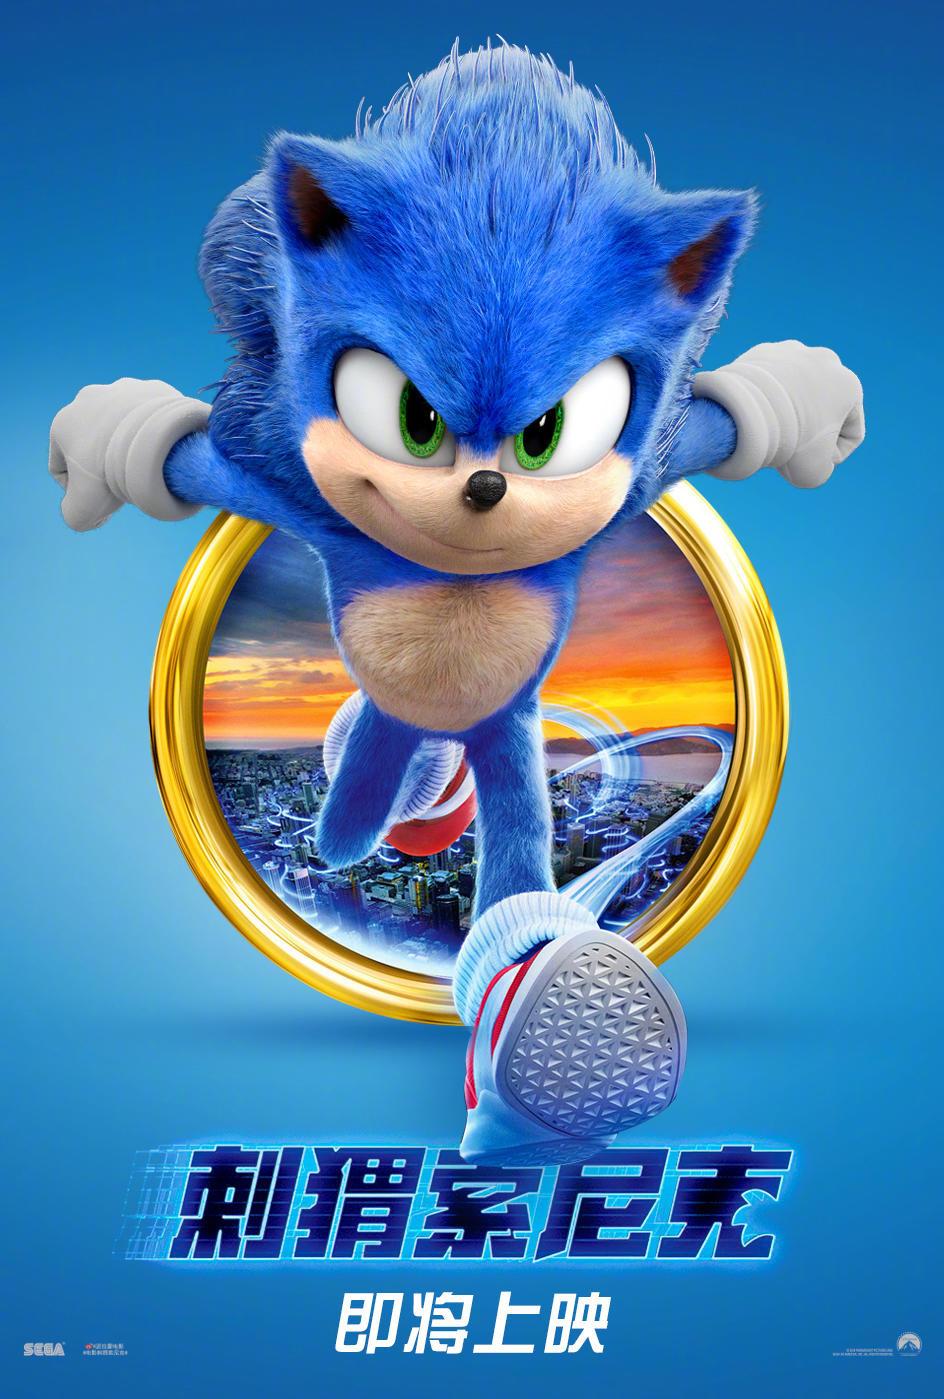 Постер фильма Соник в кино | Sonic the Hedgehog